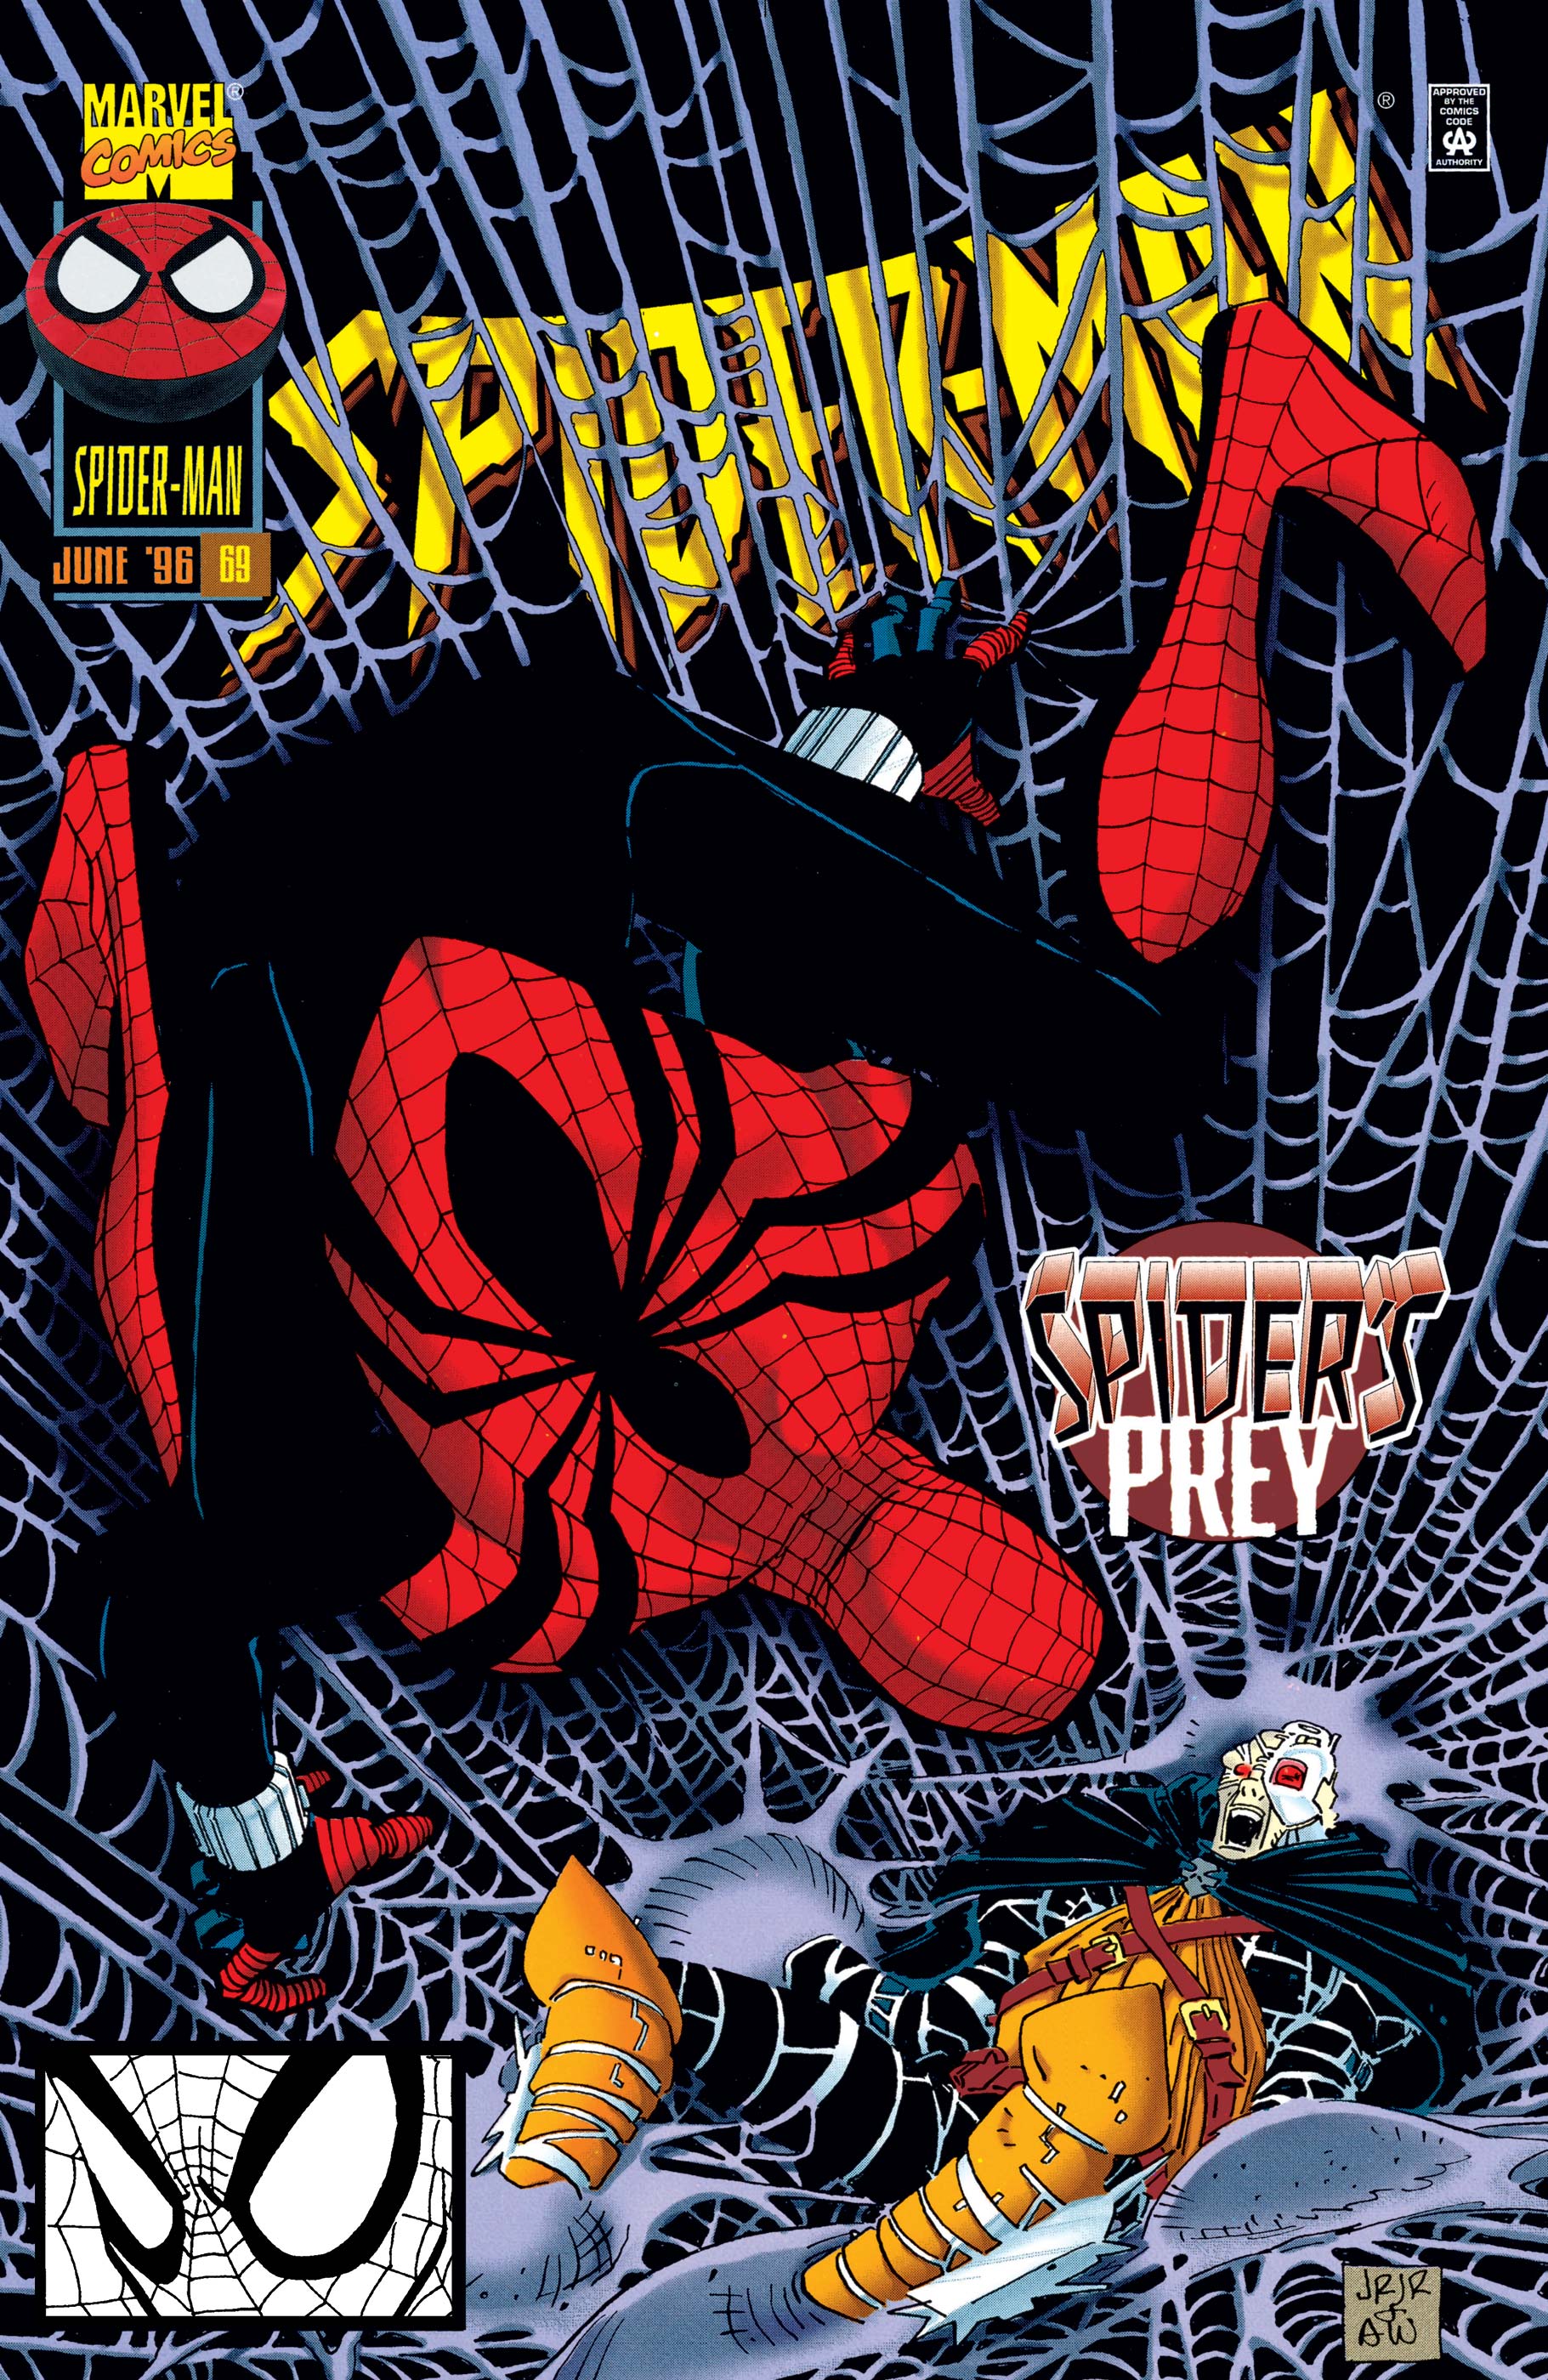 Spider-Man (1990) #69